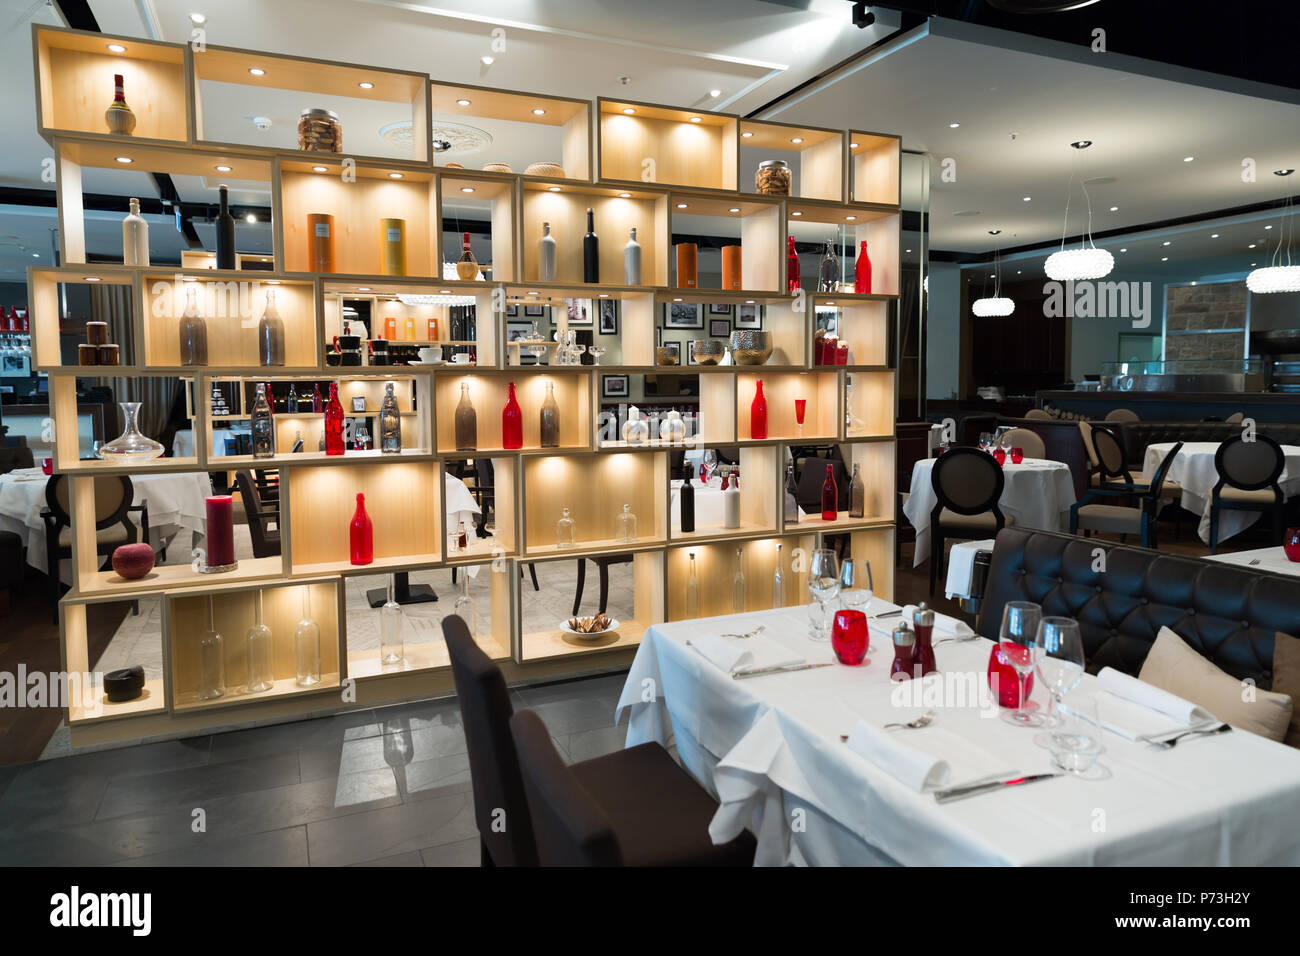 Restaurant Holzregal Trennwand mit farbigen Dekoration Stockfotografie -  Alamy